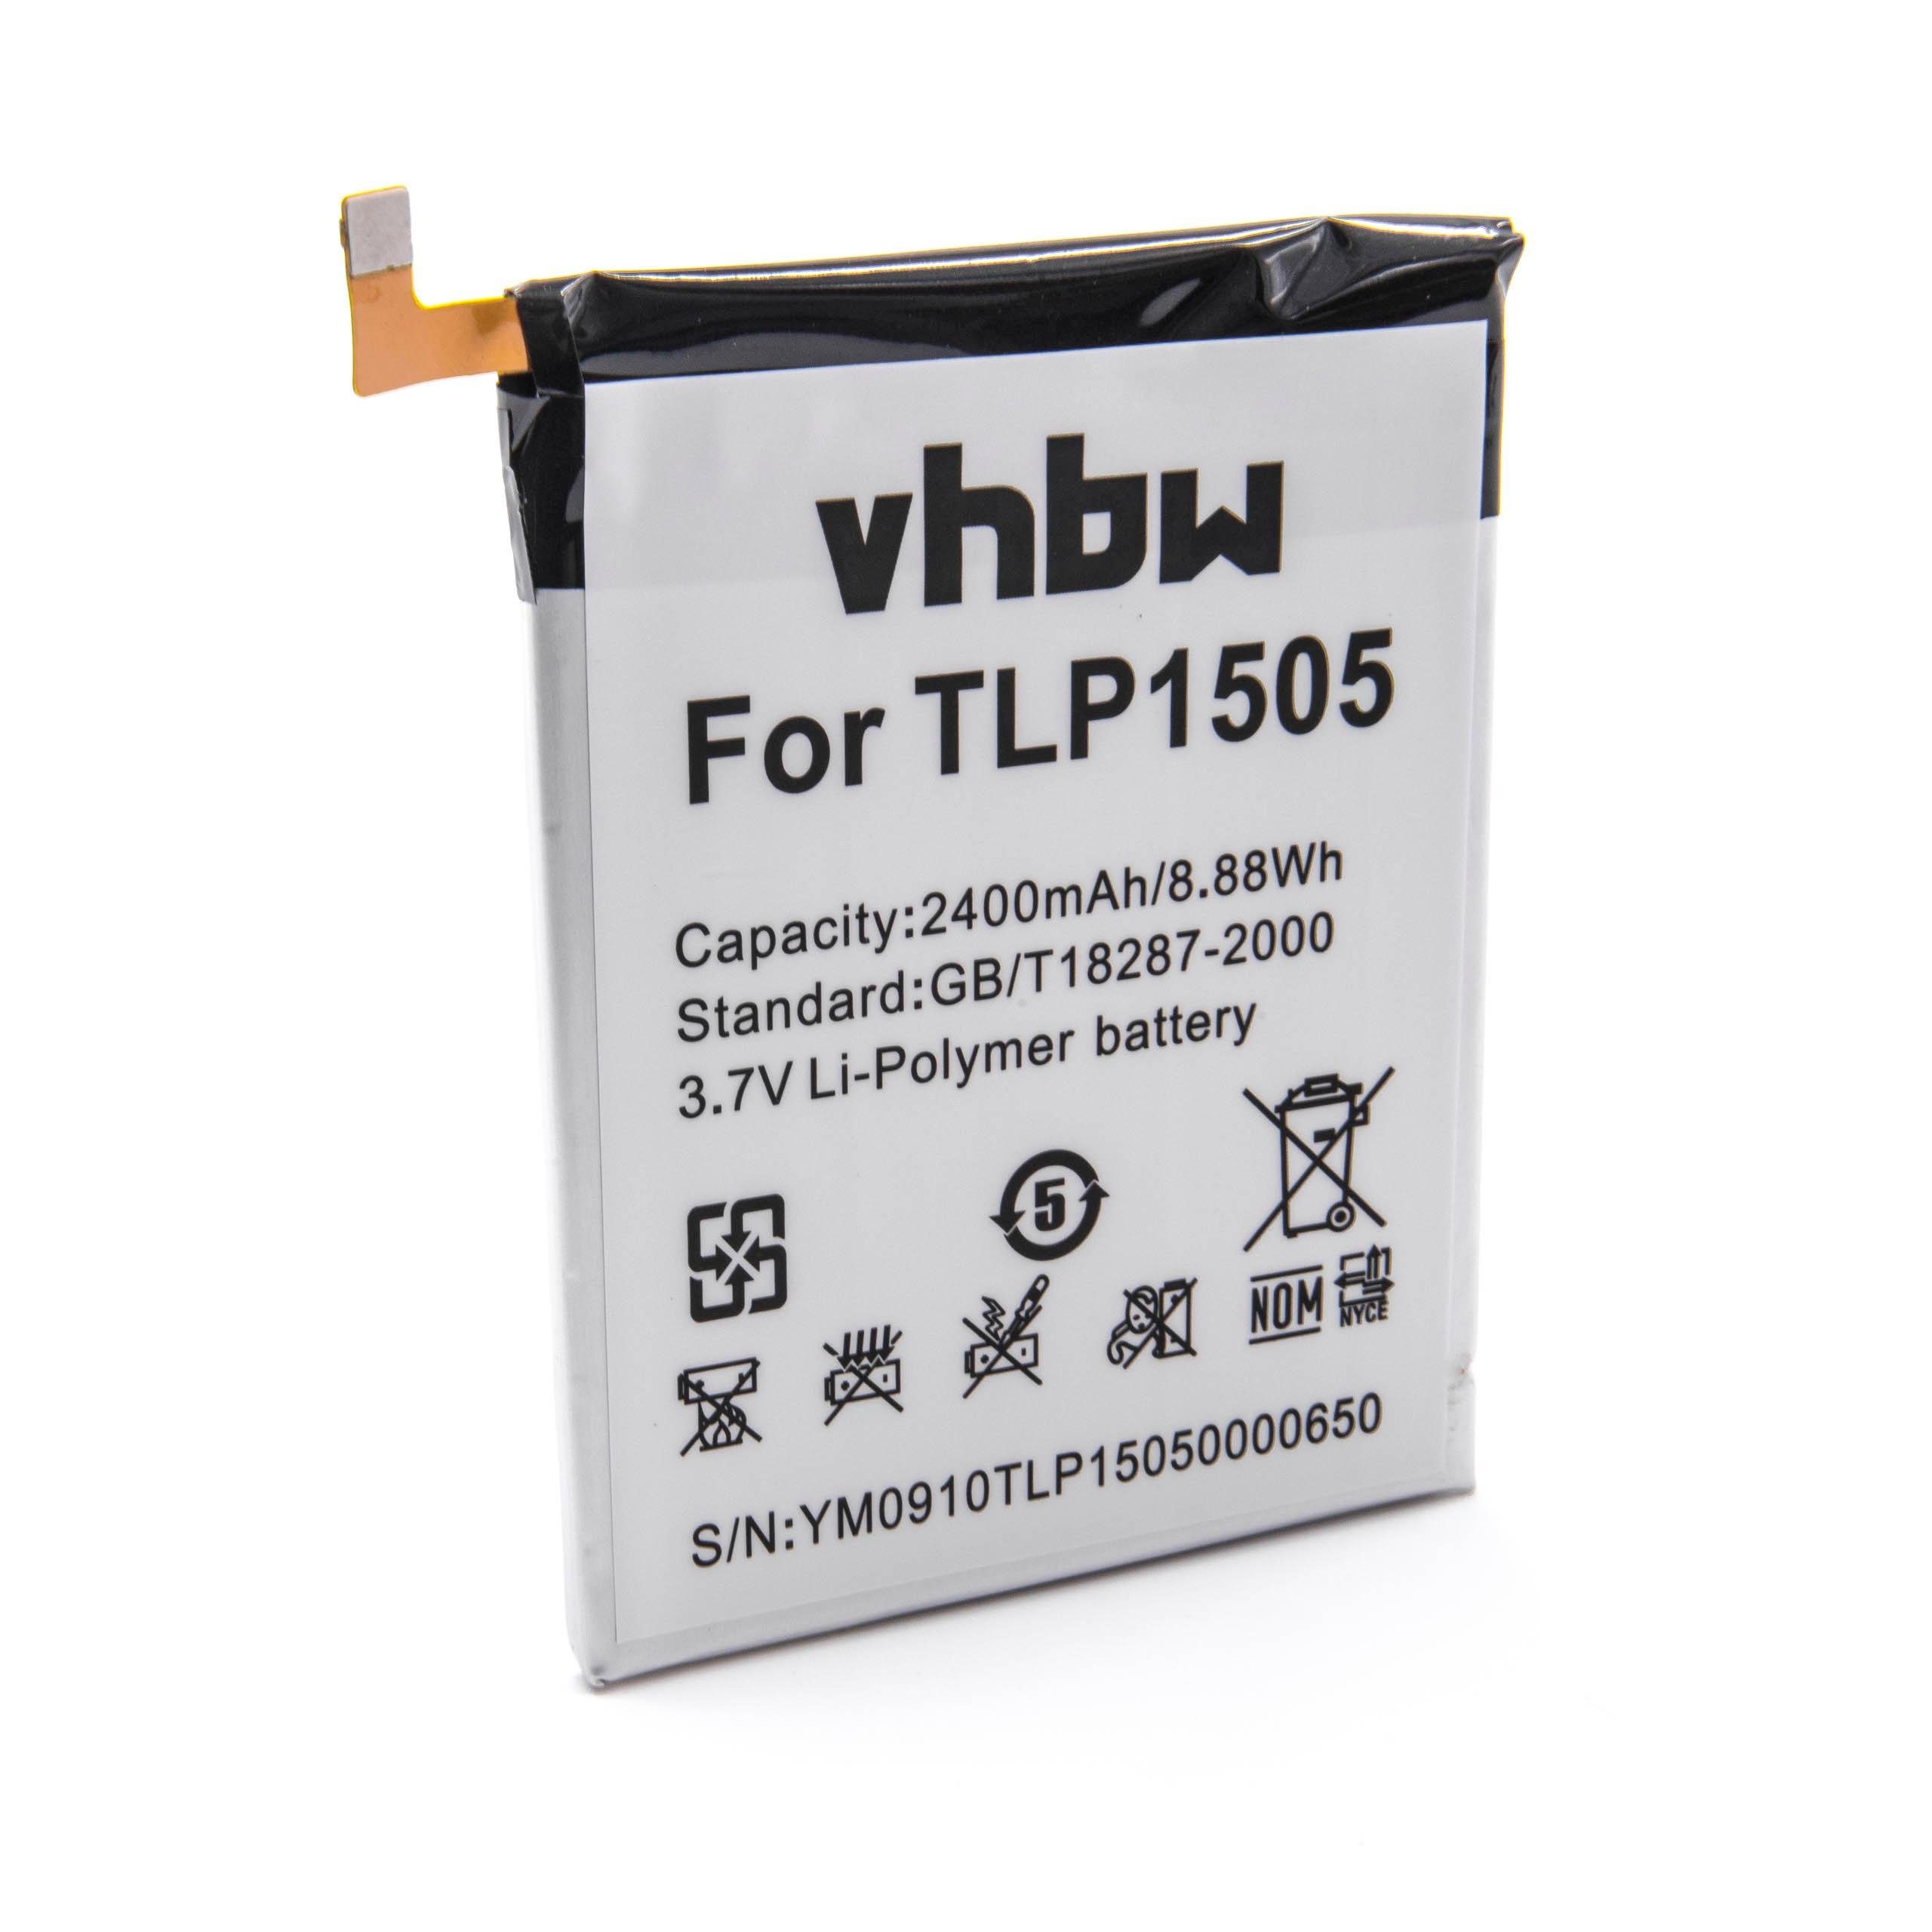 vhbw kompatibel mit Wiko Ridge Dual Sim LTE, Ridge, Ridge 4G, M531 Smartphone-Akku Li-Polymer 2400 mAh (3,8 V)